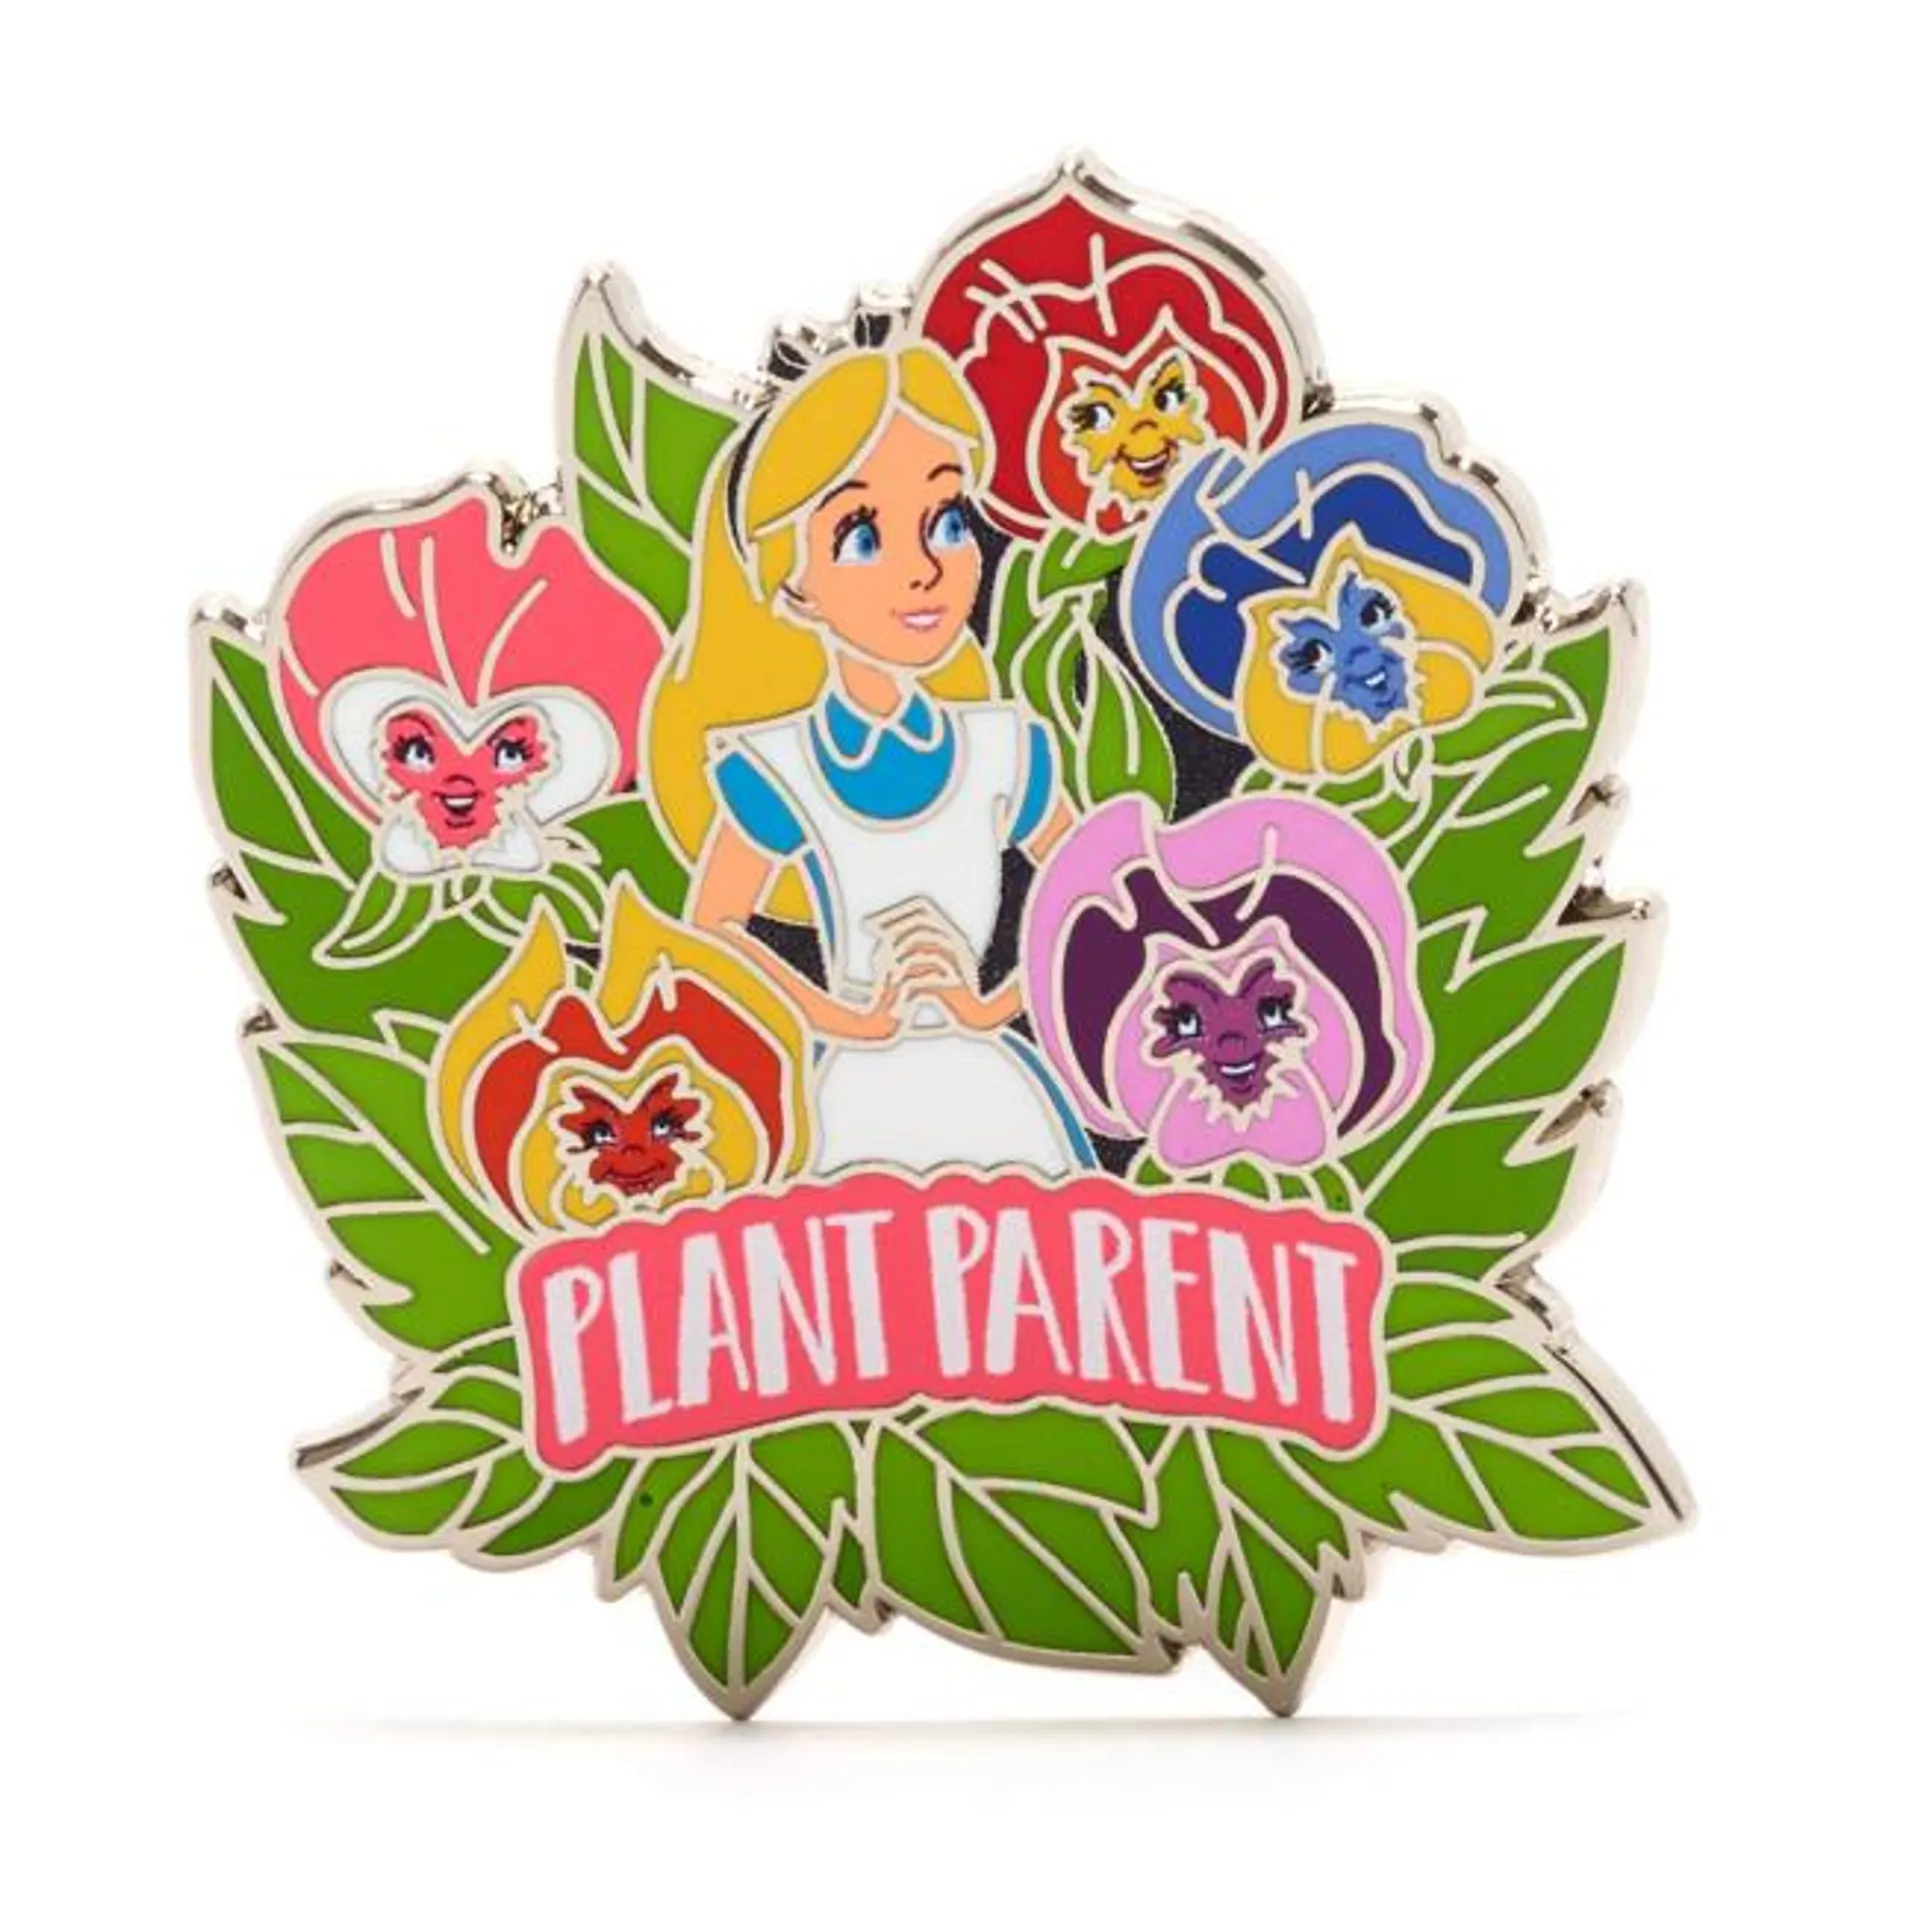 Alice in Wonderland 'Plant Parent' Pin